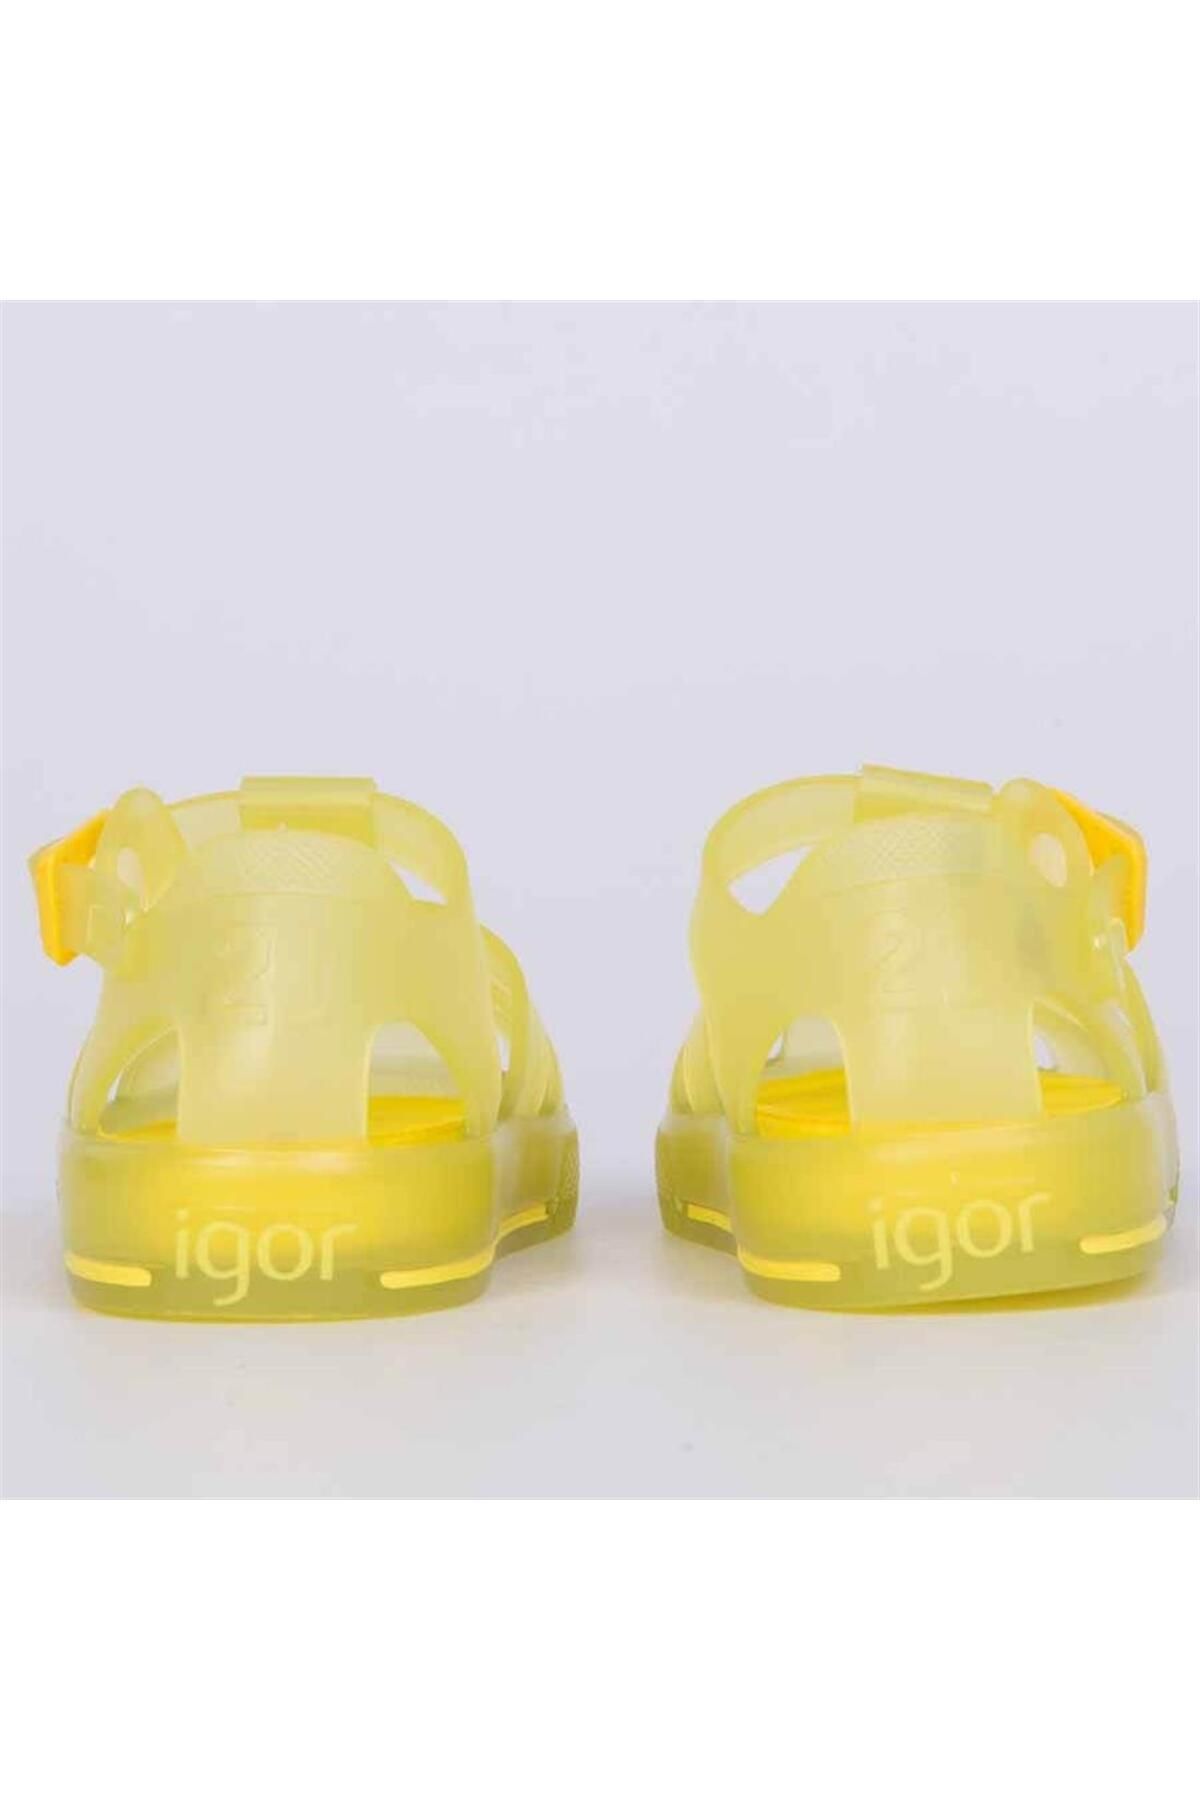 IGOR صندل های زرد کودک Tennis MC S10282-028